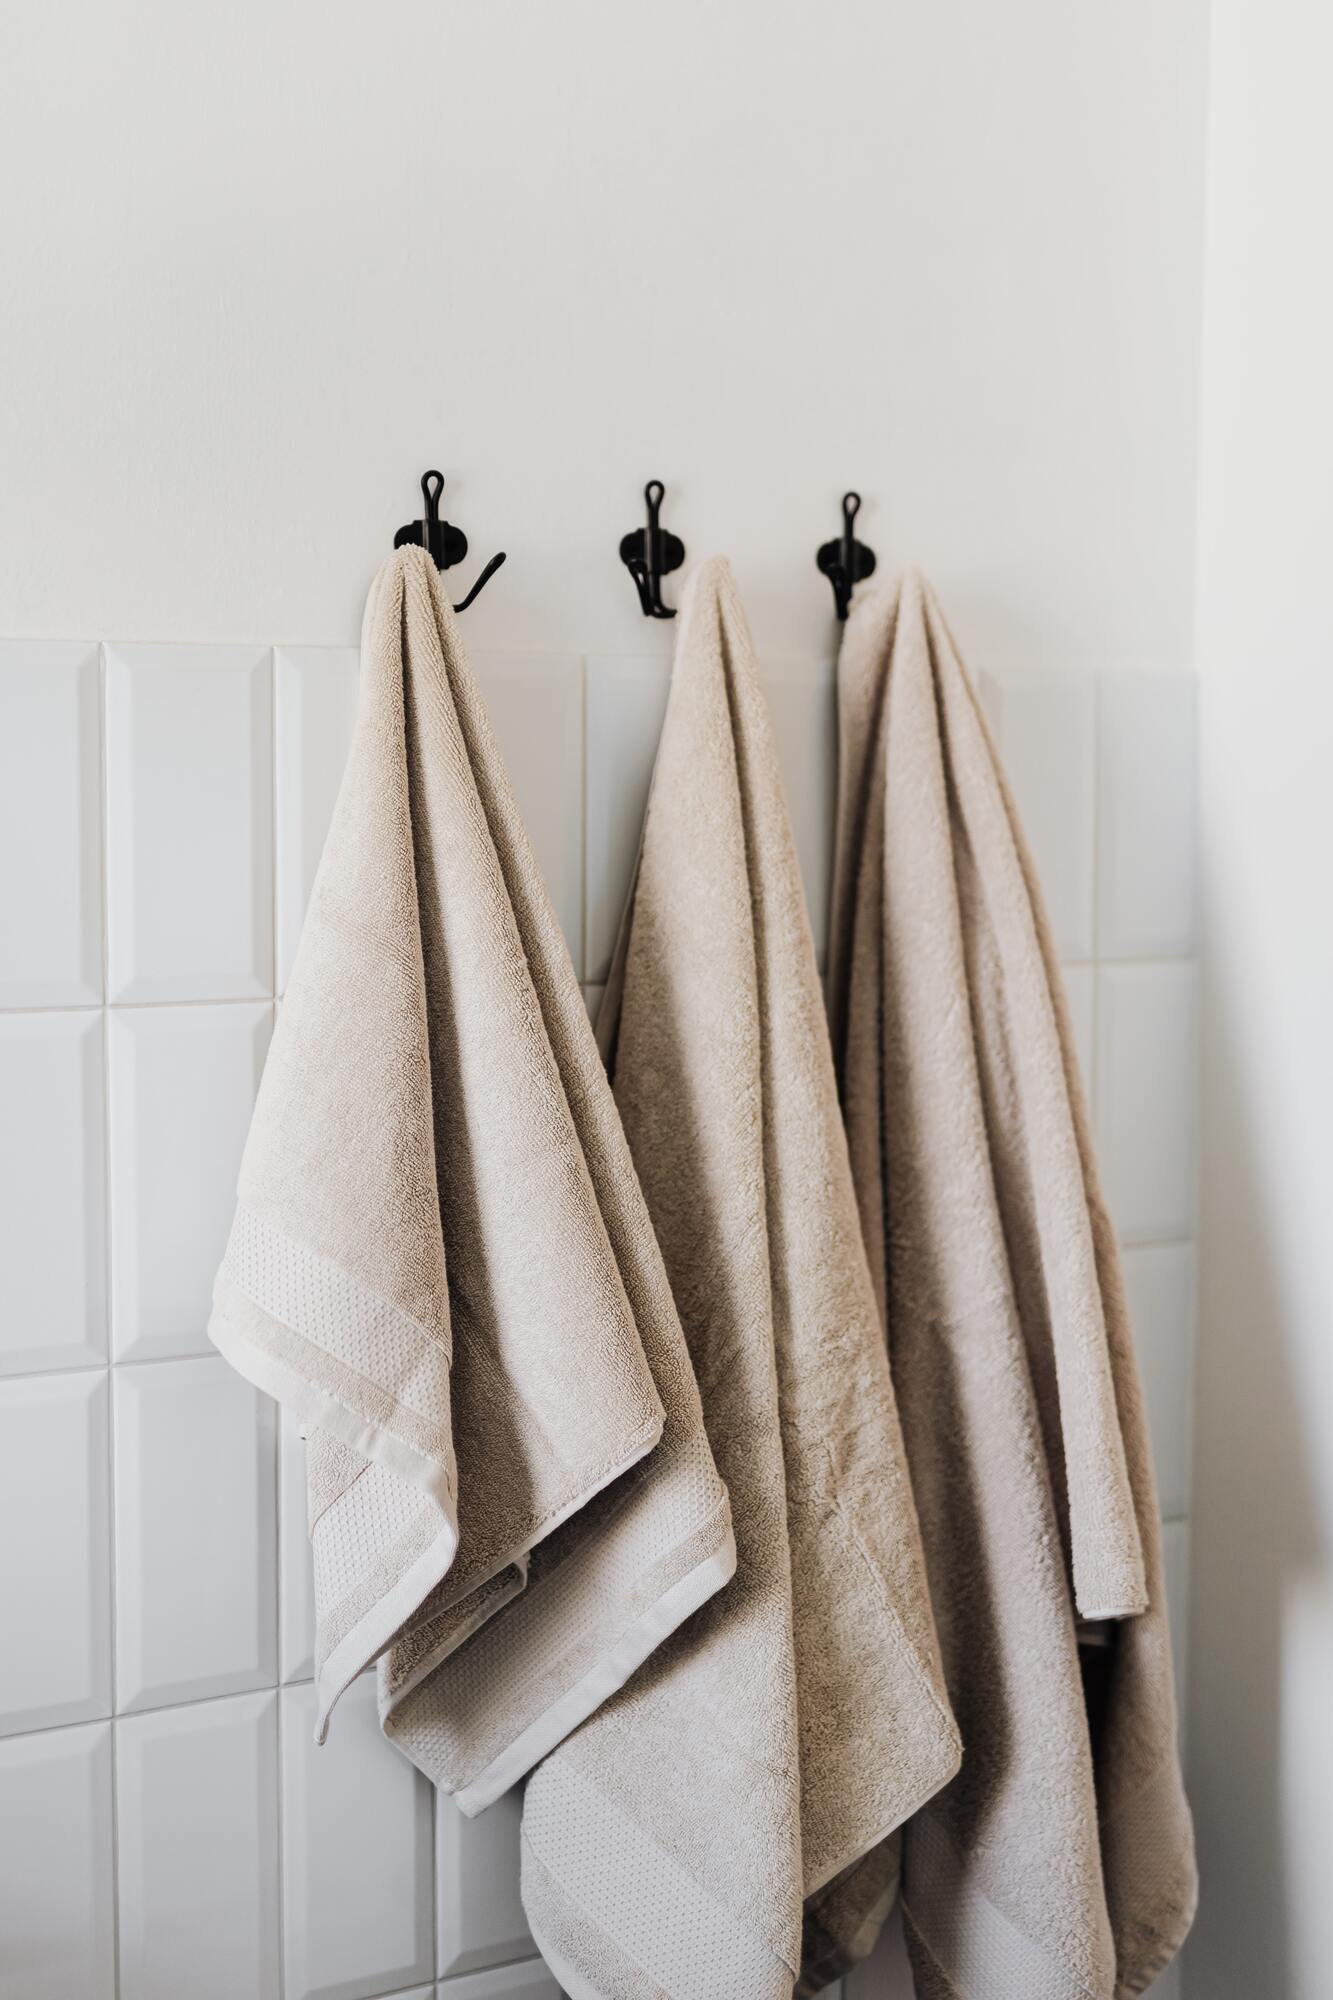 Как идеально отстирать кухонные полотенца: 5 самых действенных способов